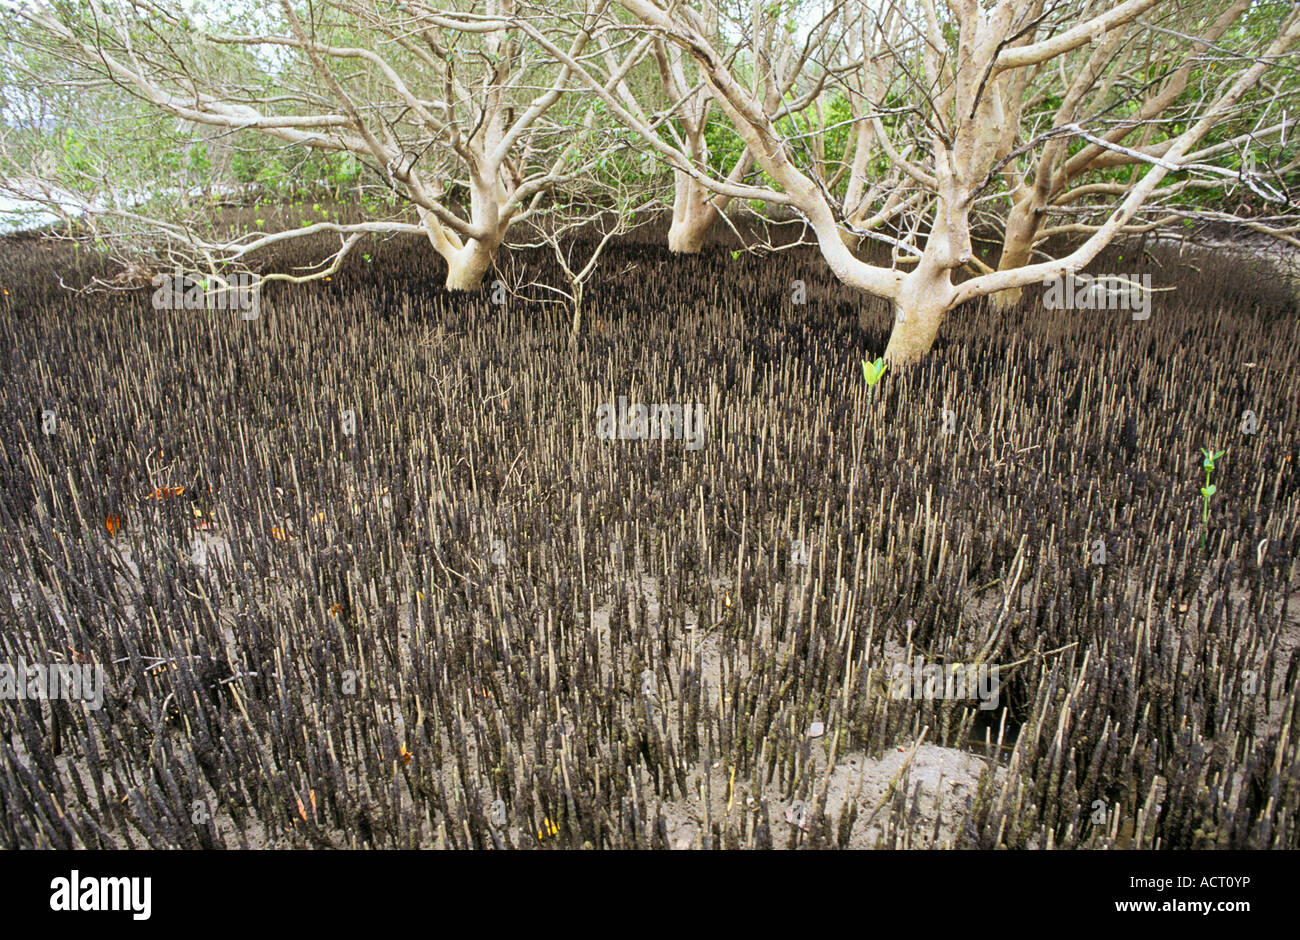 Tronco di bianco albero di mangrovia Avicennia marina è circondato da radici aeree o pneumatofori Transkei Sud Africa Foto Stock